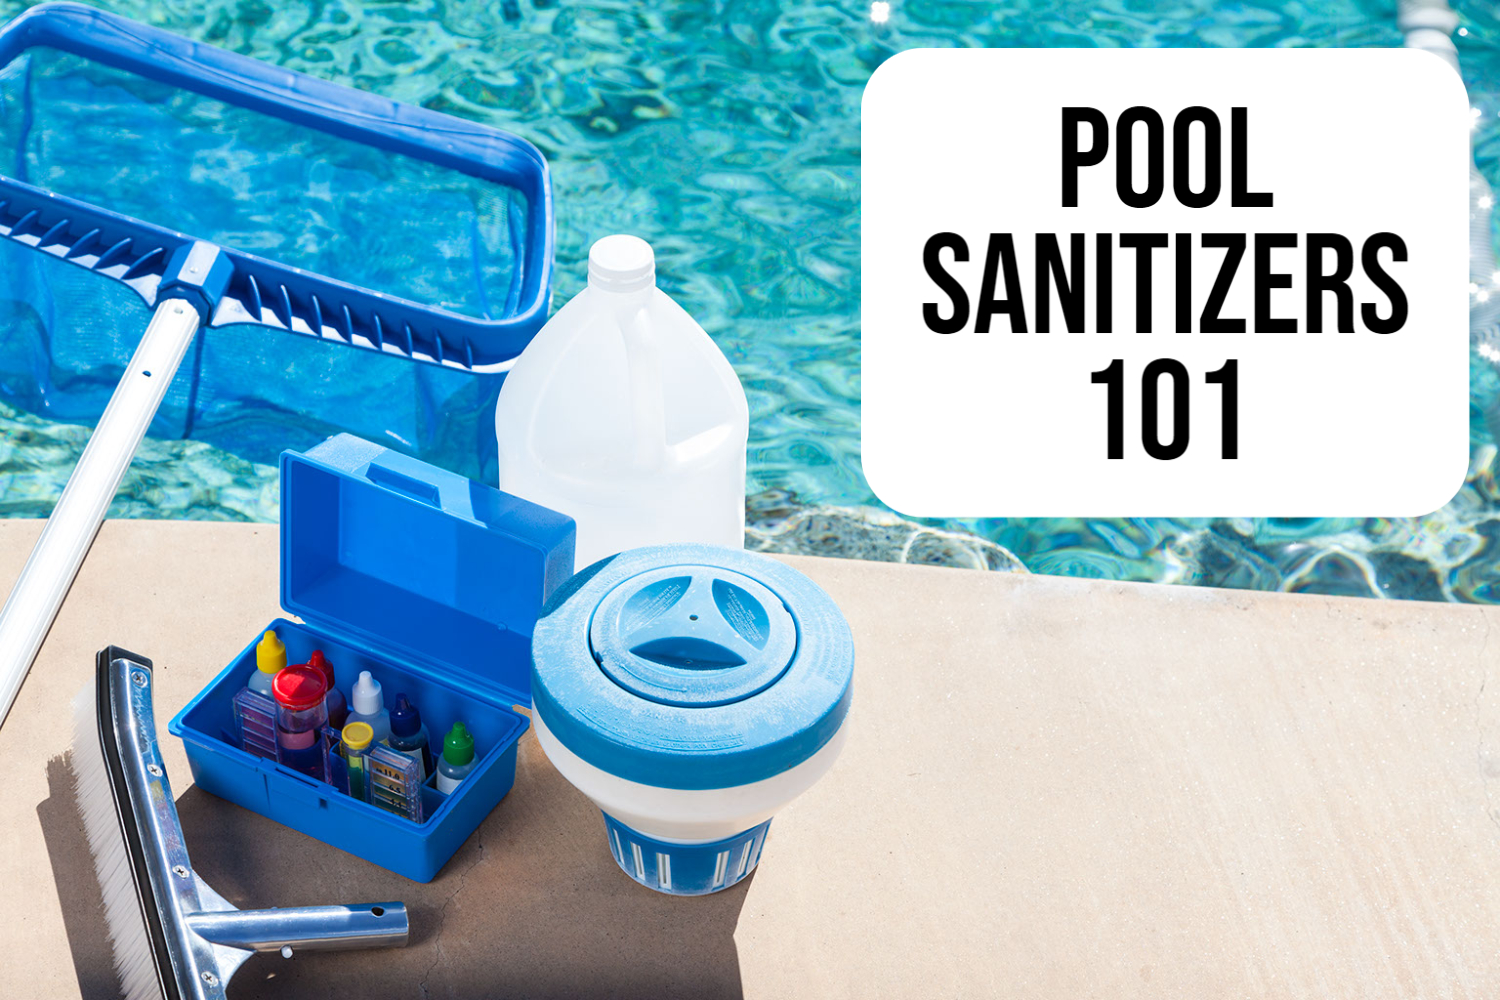 Pool sanitizing basics